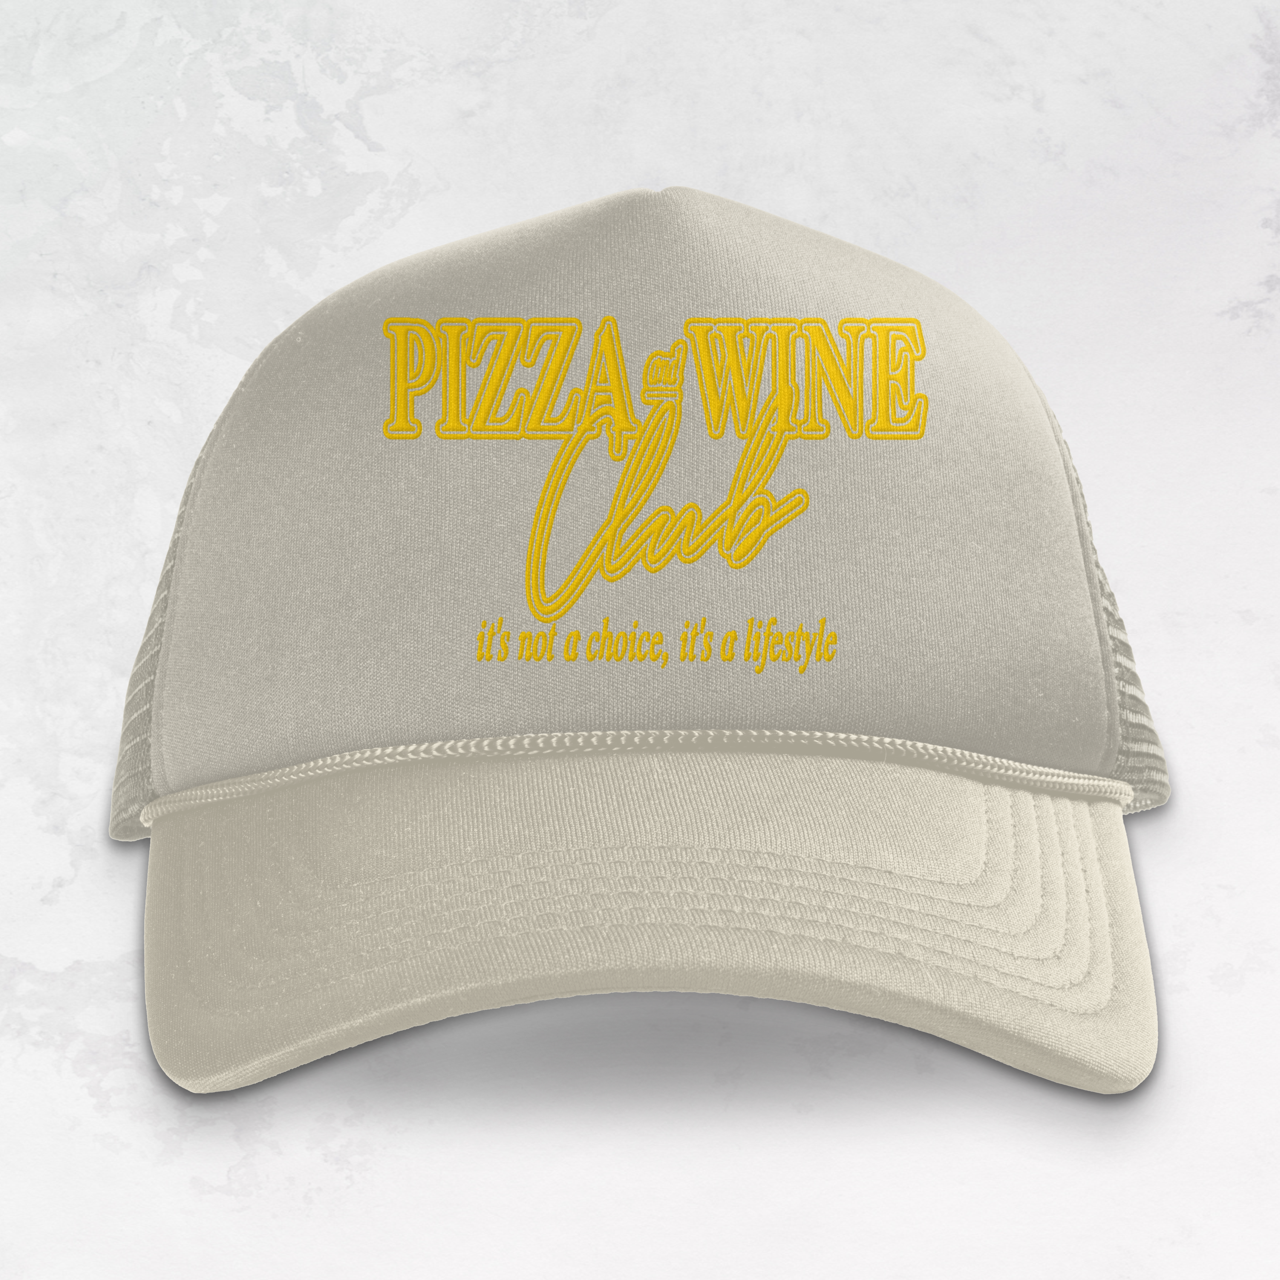 Underground Original Design: Pizza & Wine Club Trucker Hat